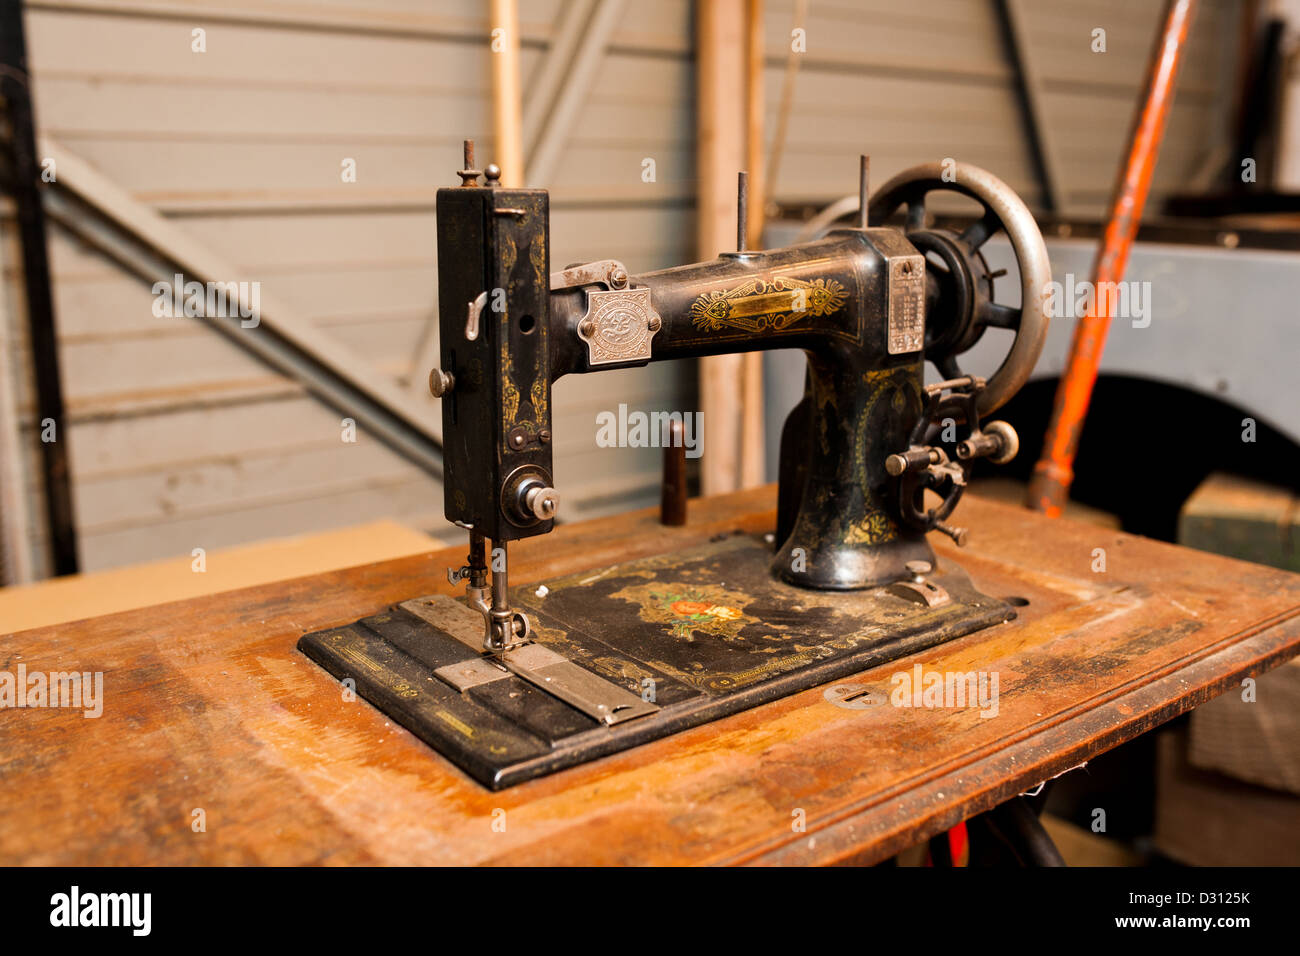 Une vieille machine à coudre vintage, sur une table en bois dans un atelier. Banque D'Images